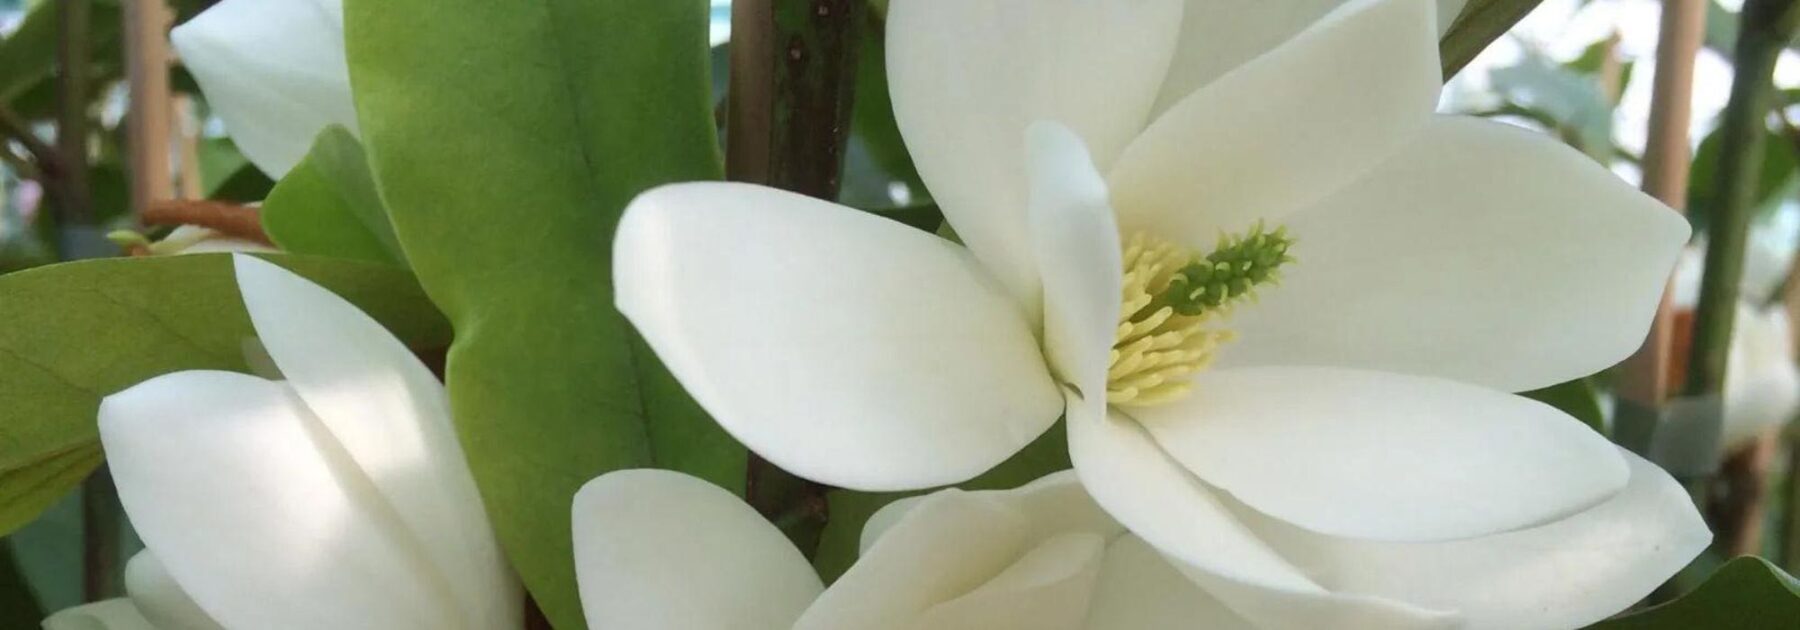 Feuillage persistant et fleurs parfumées : découvrez le Michelia !